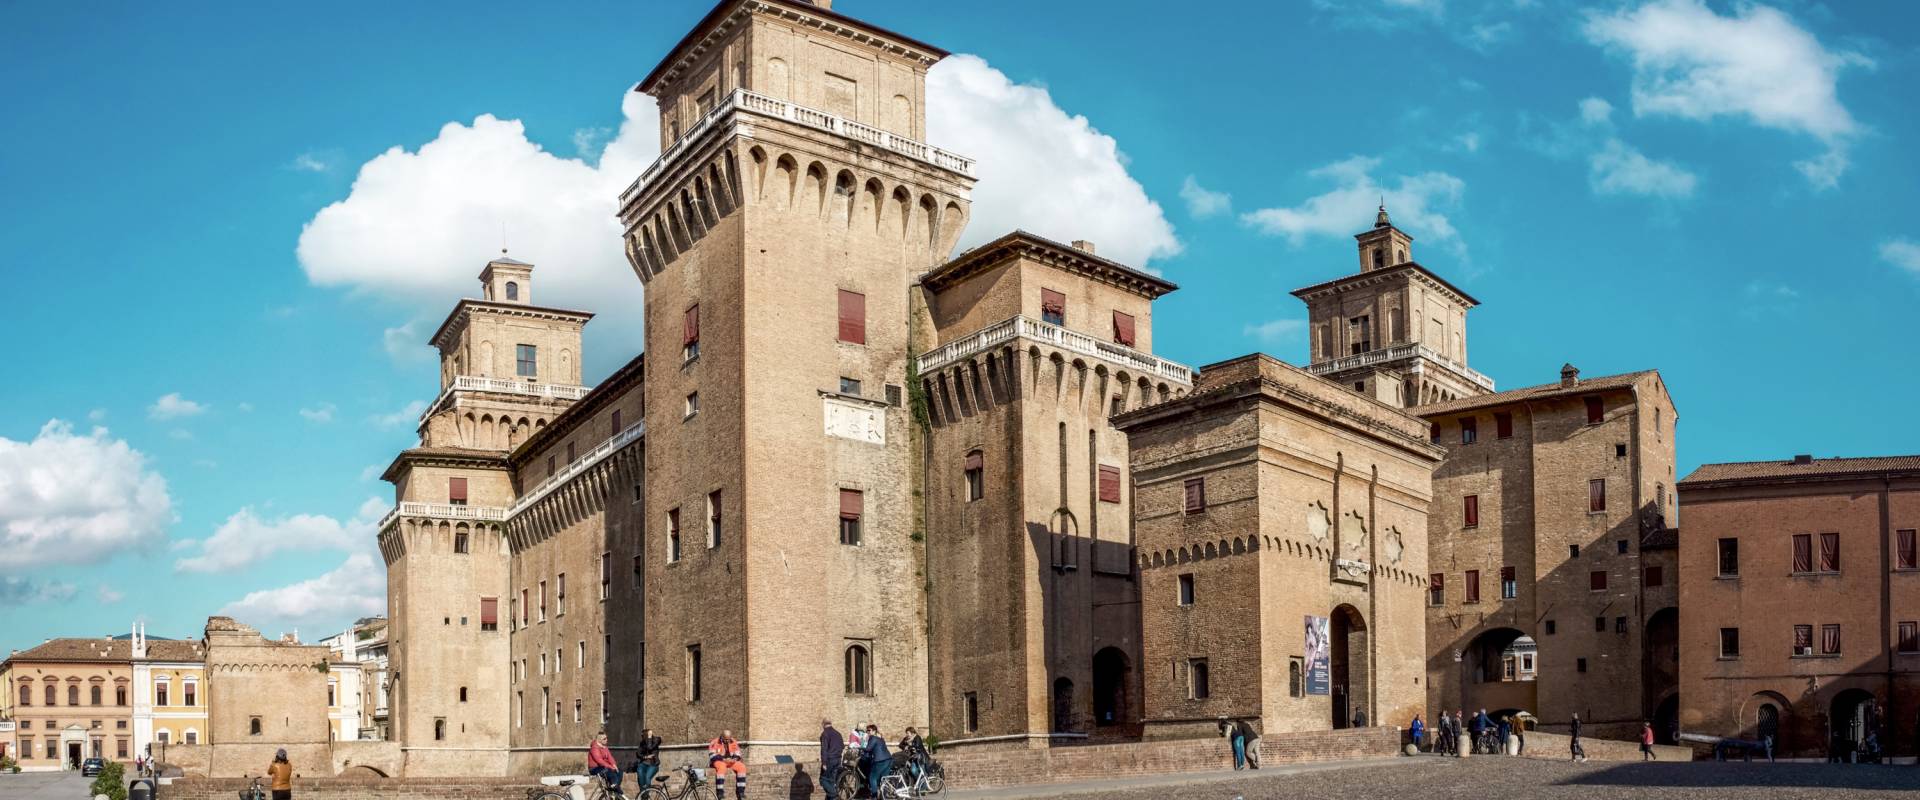 Ferrara -- Castello Estense foto di Vanni Lazzari